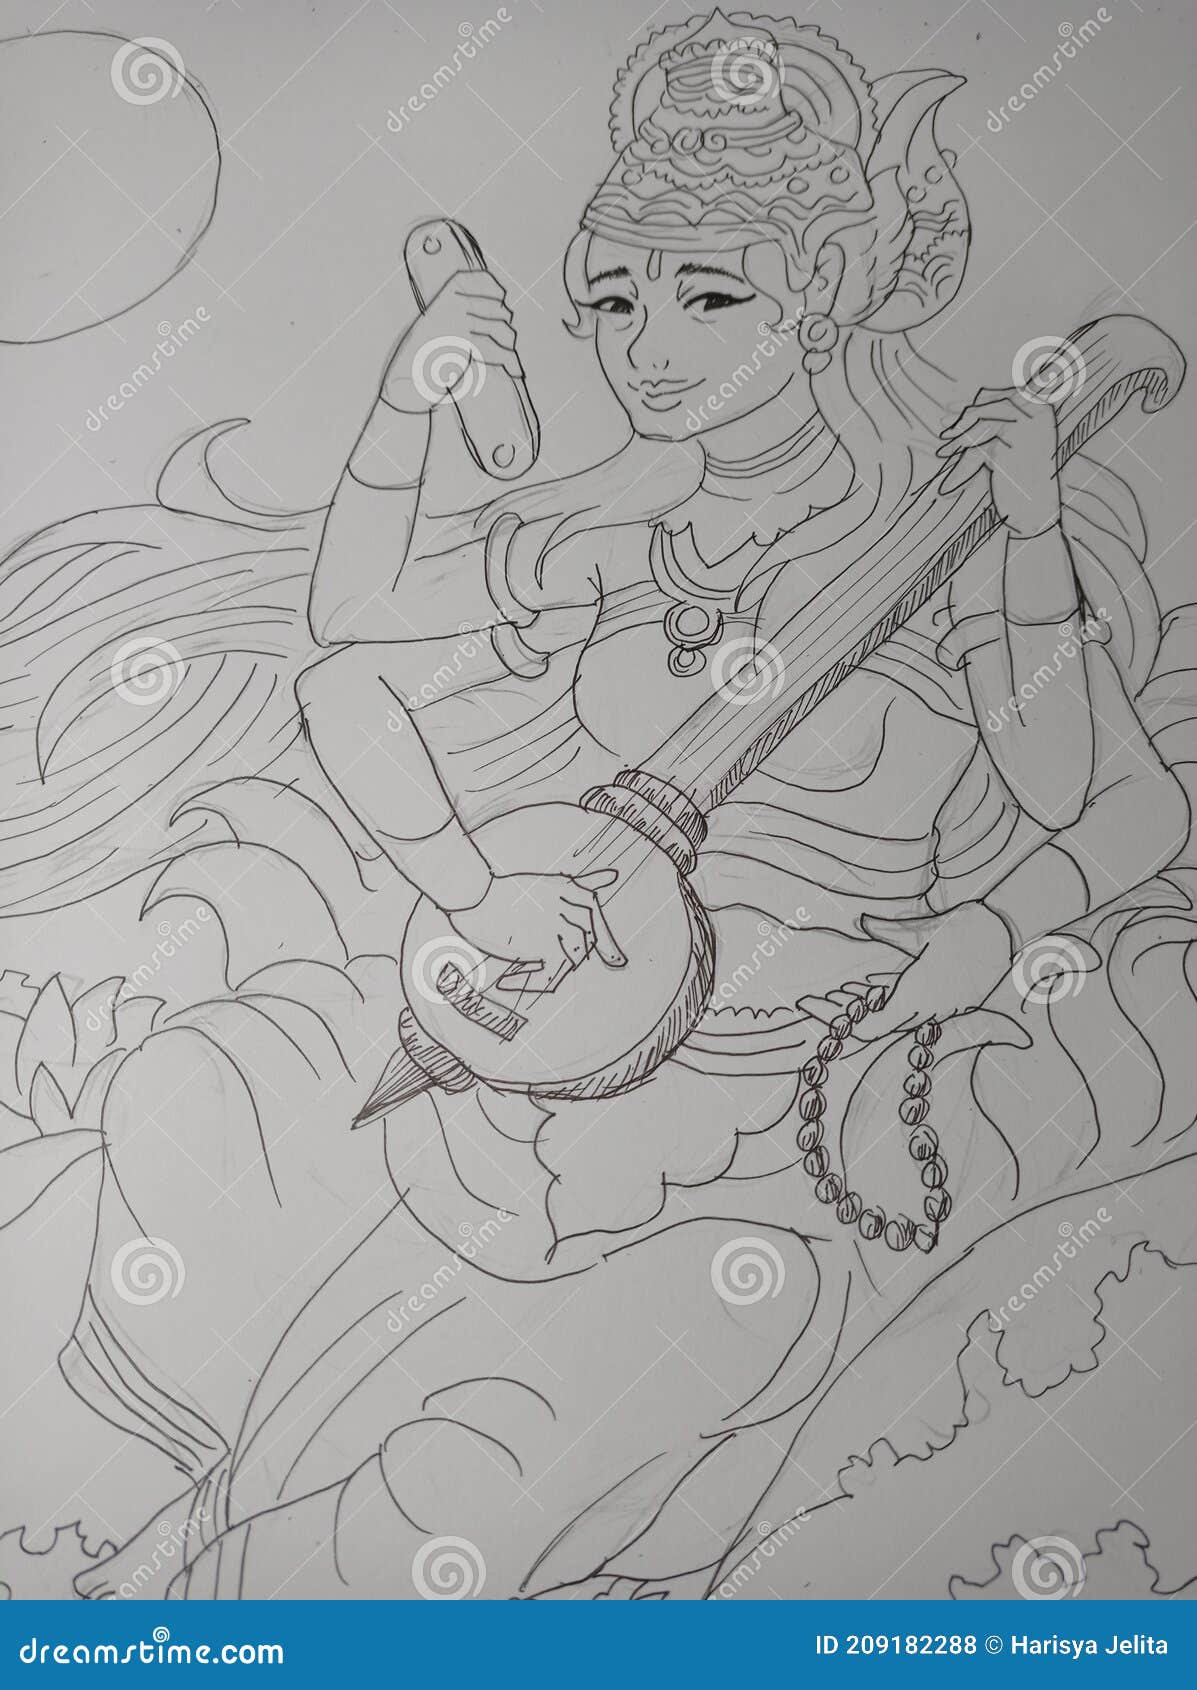 Discover 131+ goddess pencil sketch